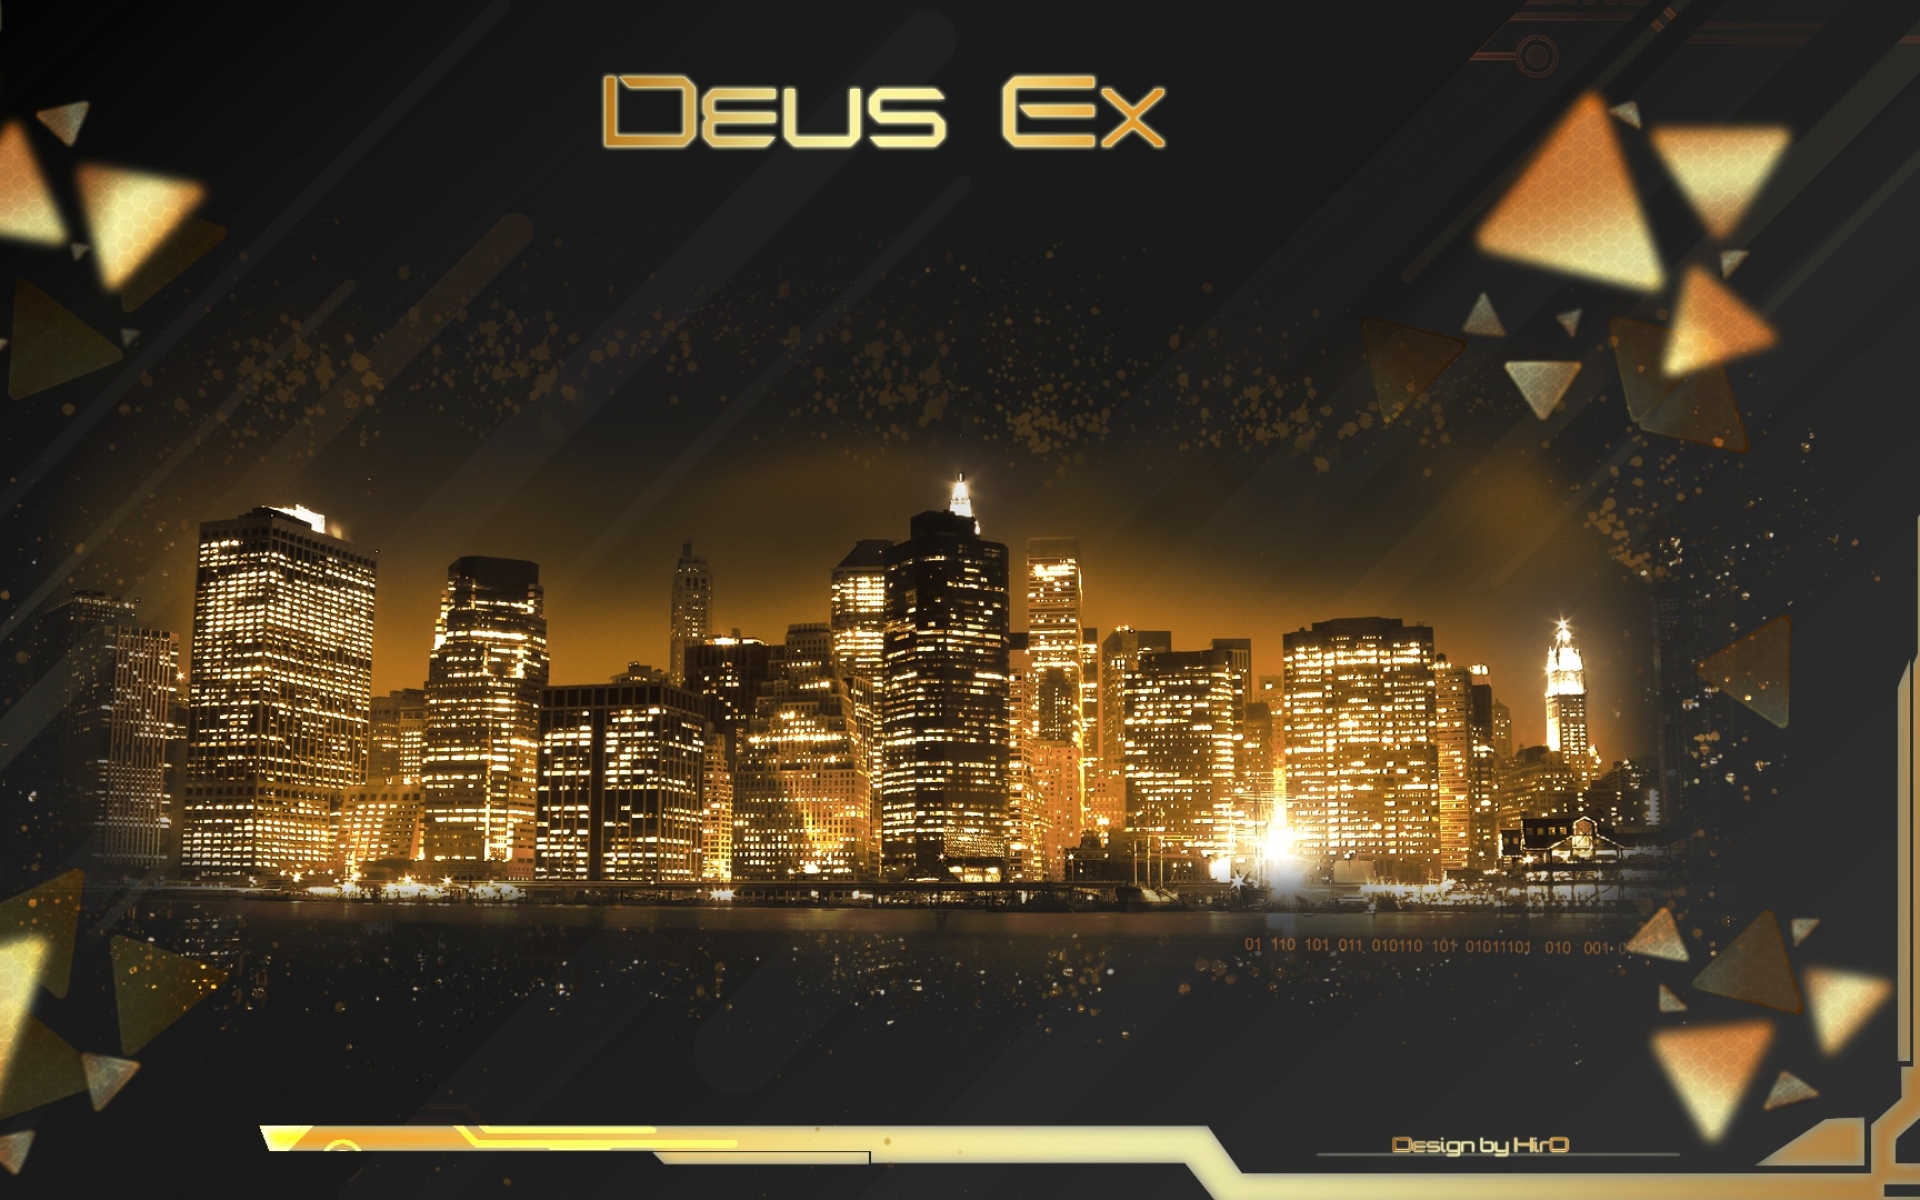 Картинки Deus ex, город, ночь, свет фото и обои на рабочий стол